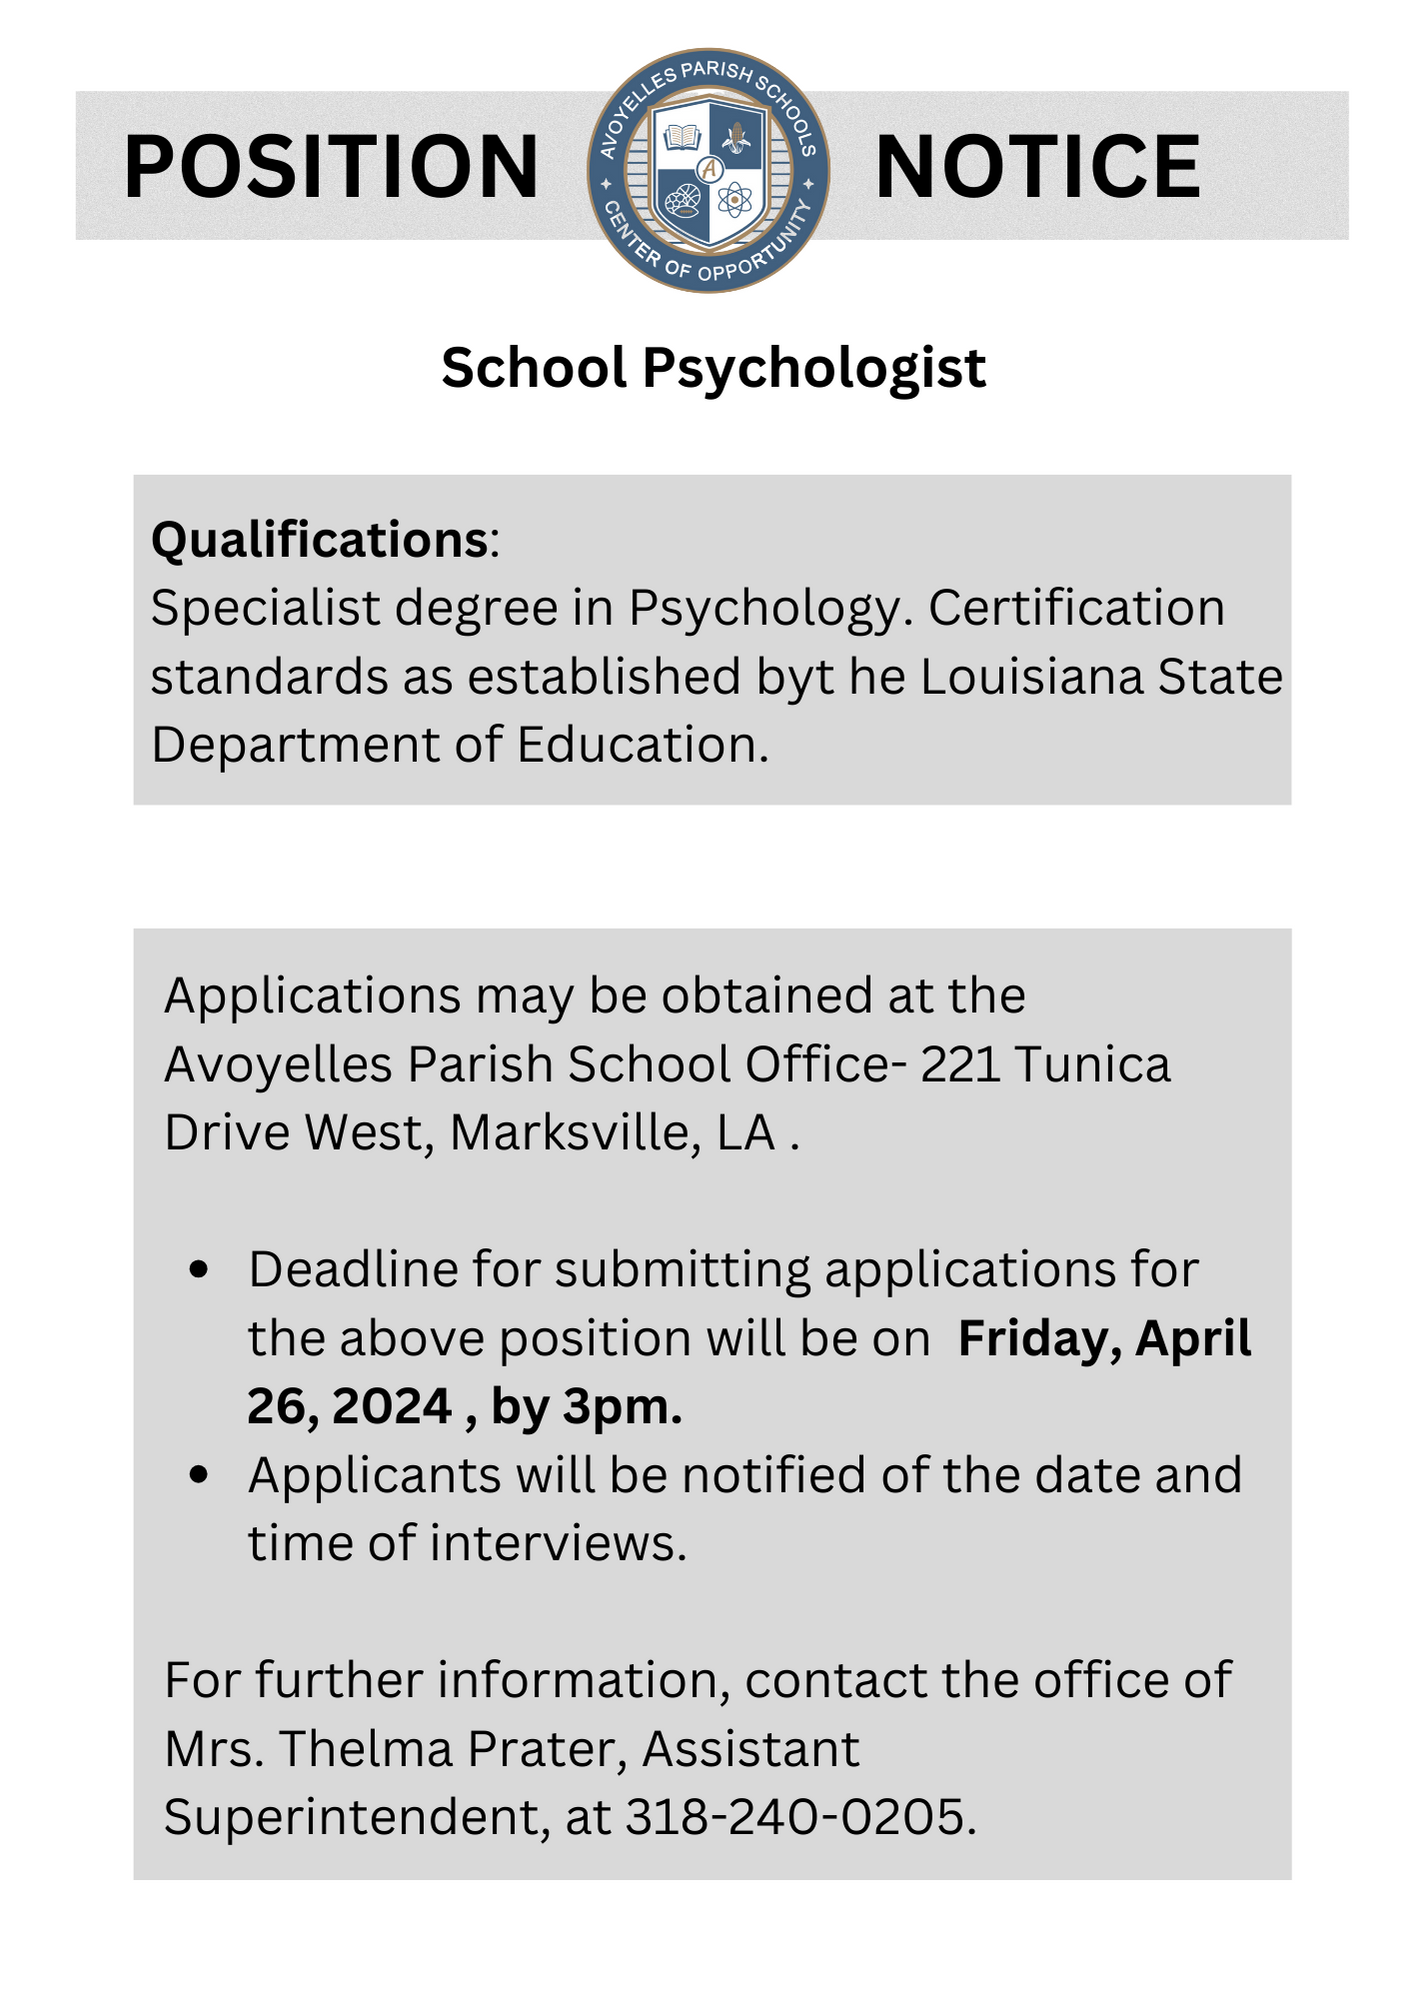 School Psychologist Vacancy